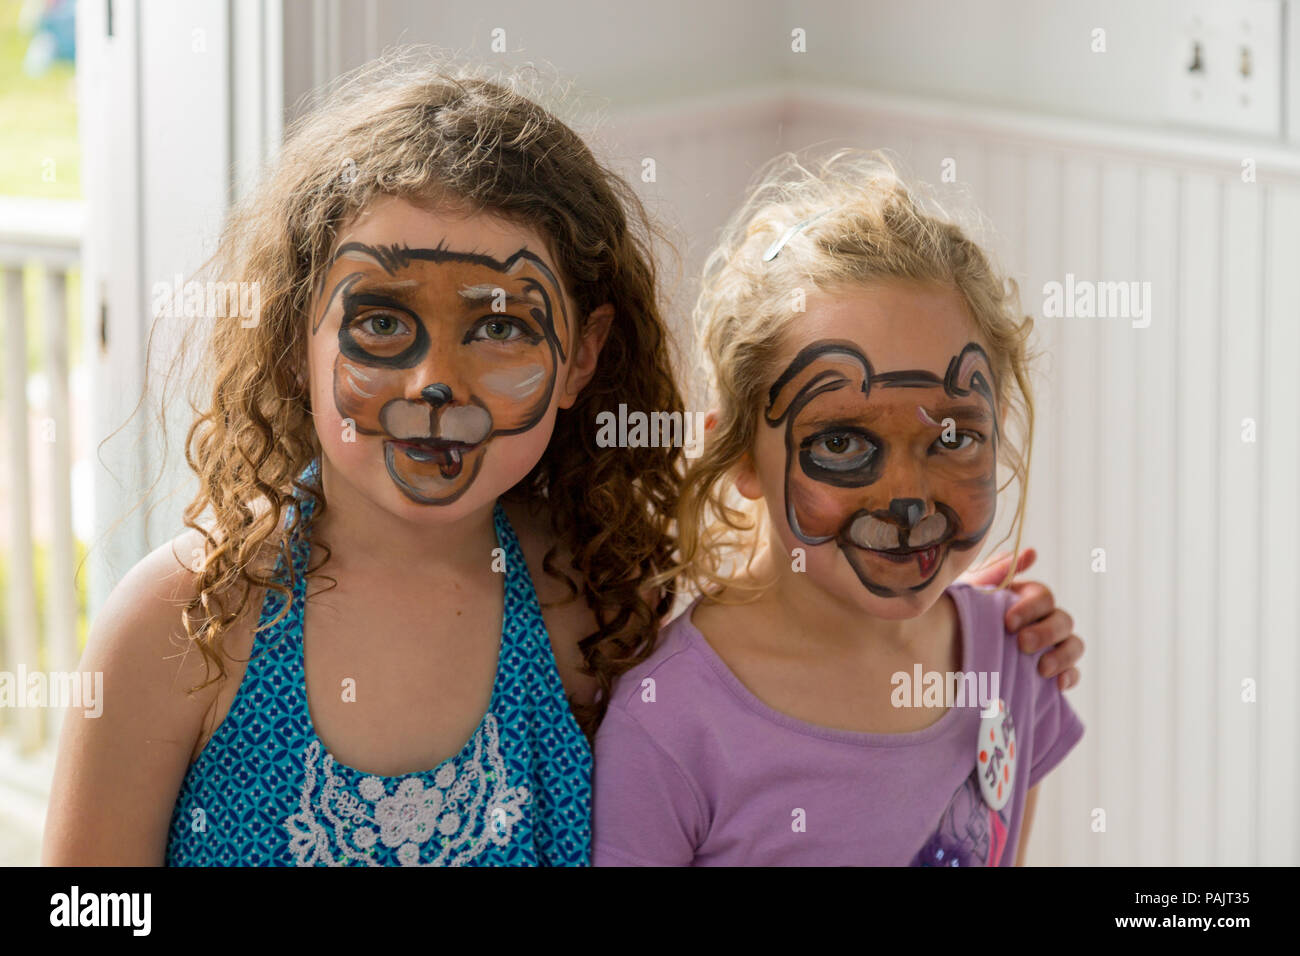 Deux jeunes filles avec de la peinture pour le visage sur leurs visages Banque D'Images